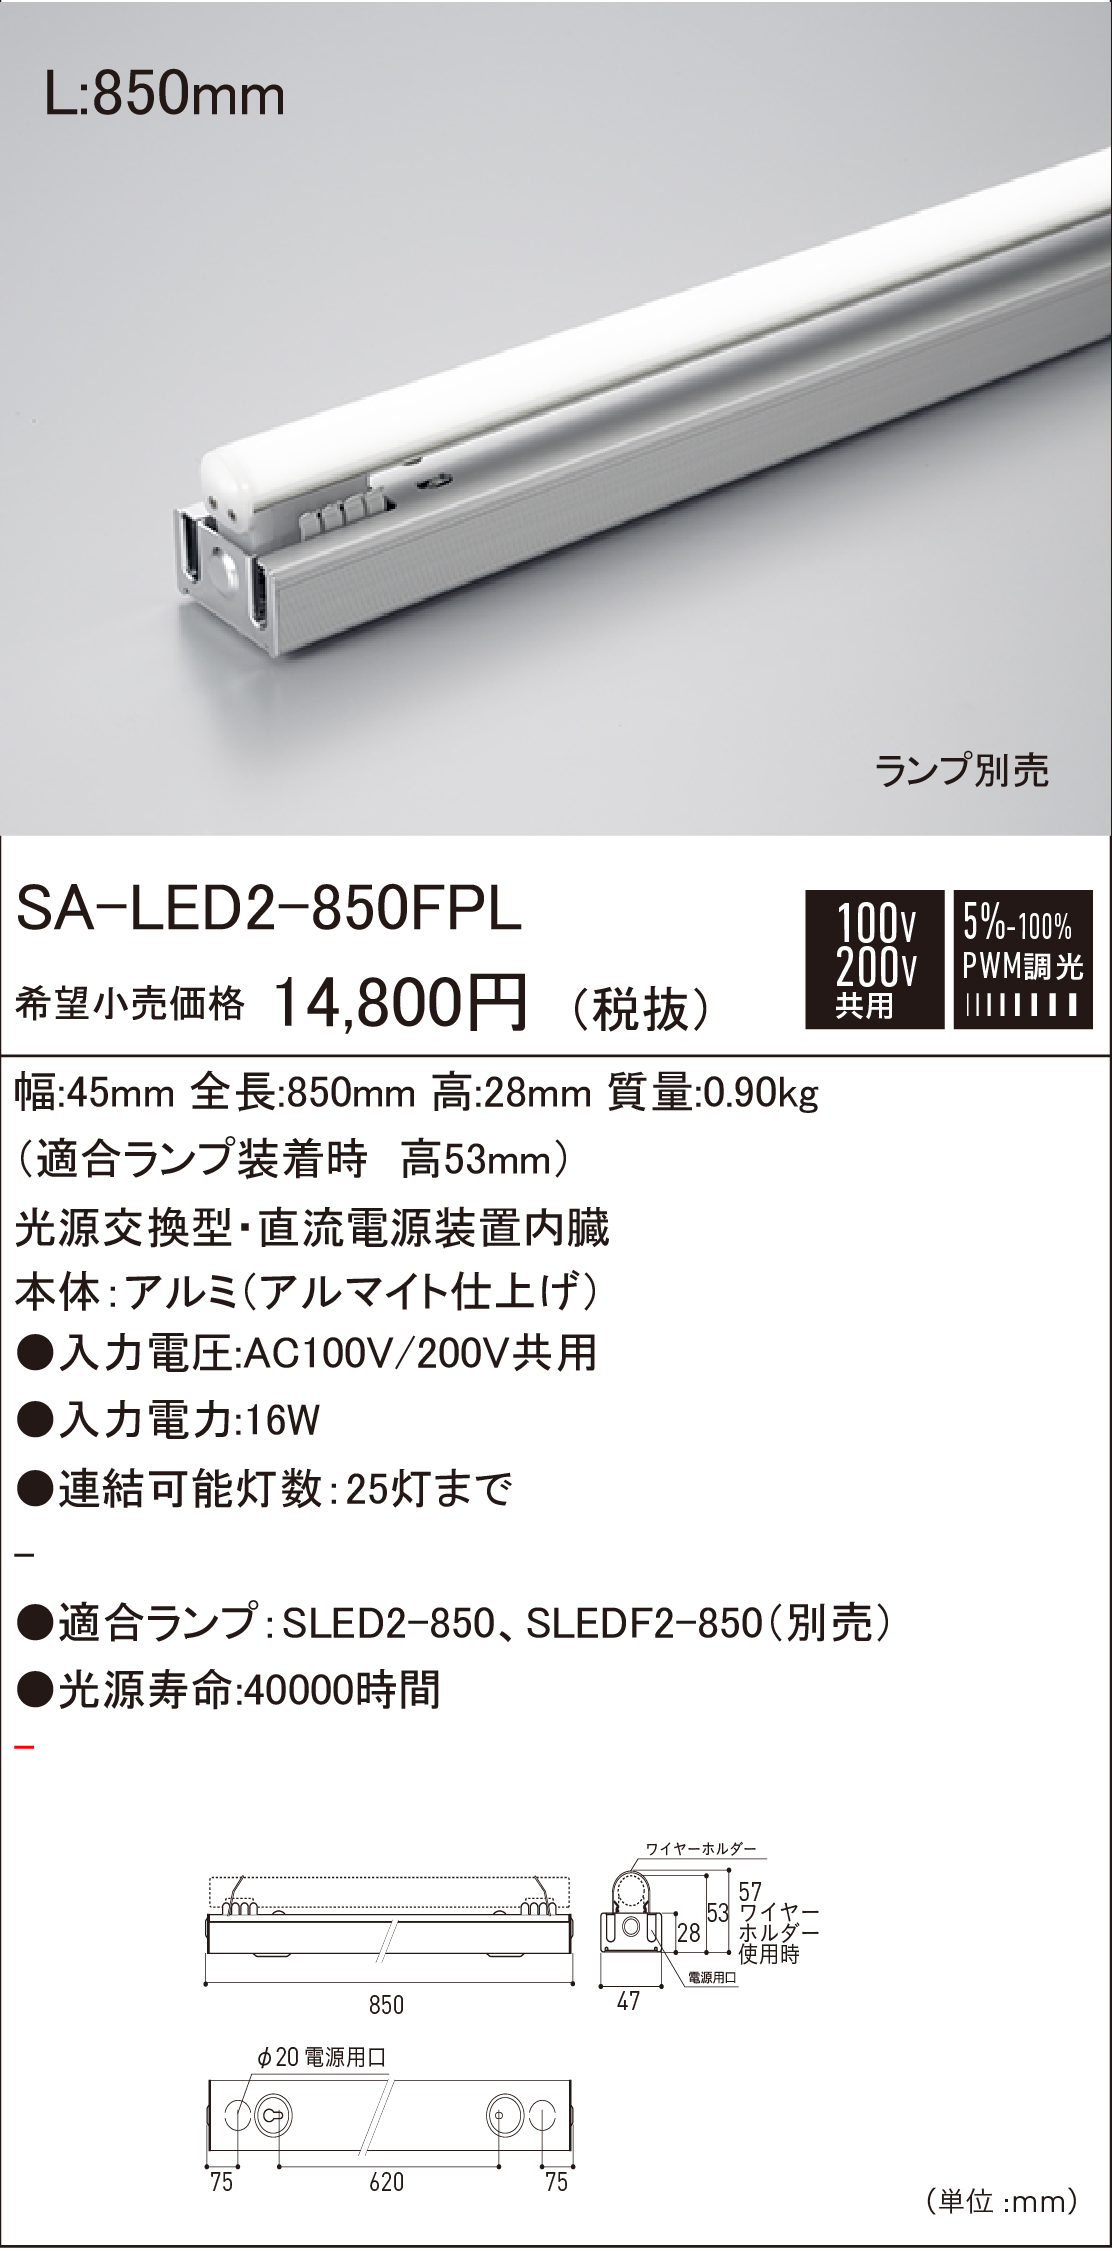 SA-LED2 FPL 建築化照明 ダウンロード | DNライティング株式会社